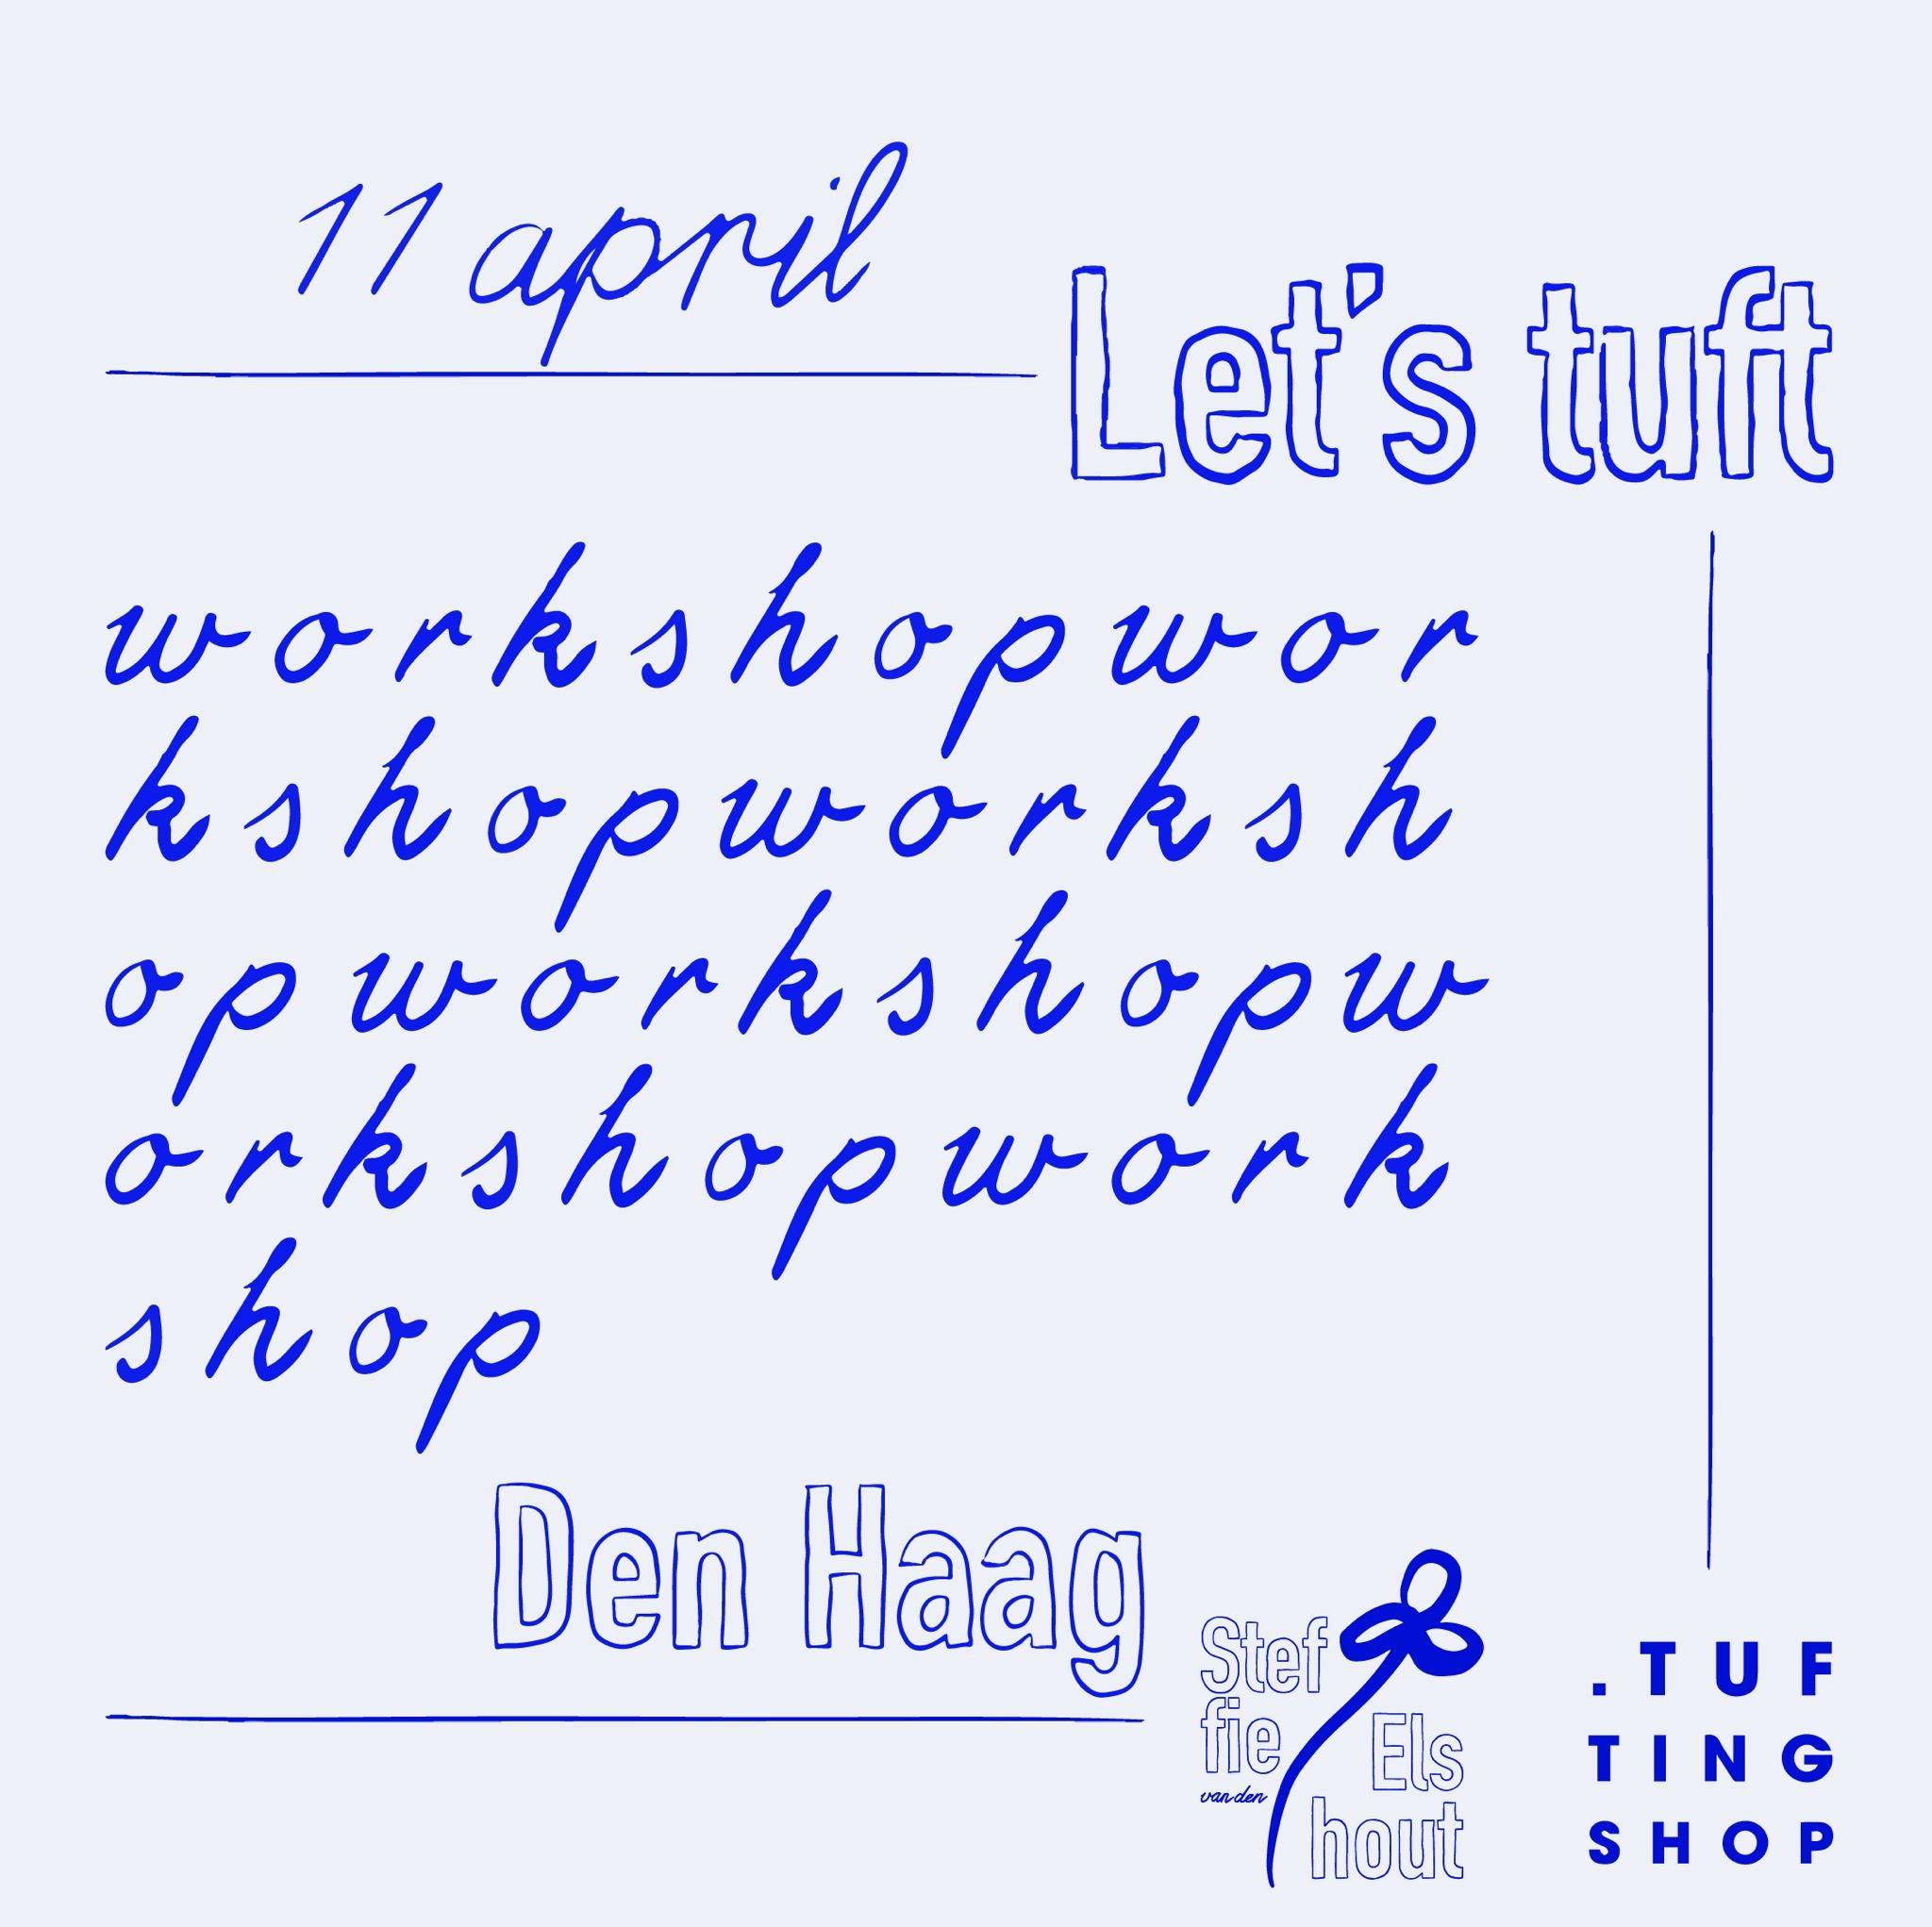 Den Haag Workshop